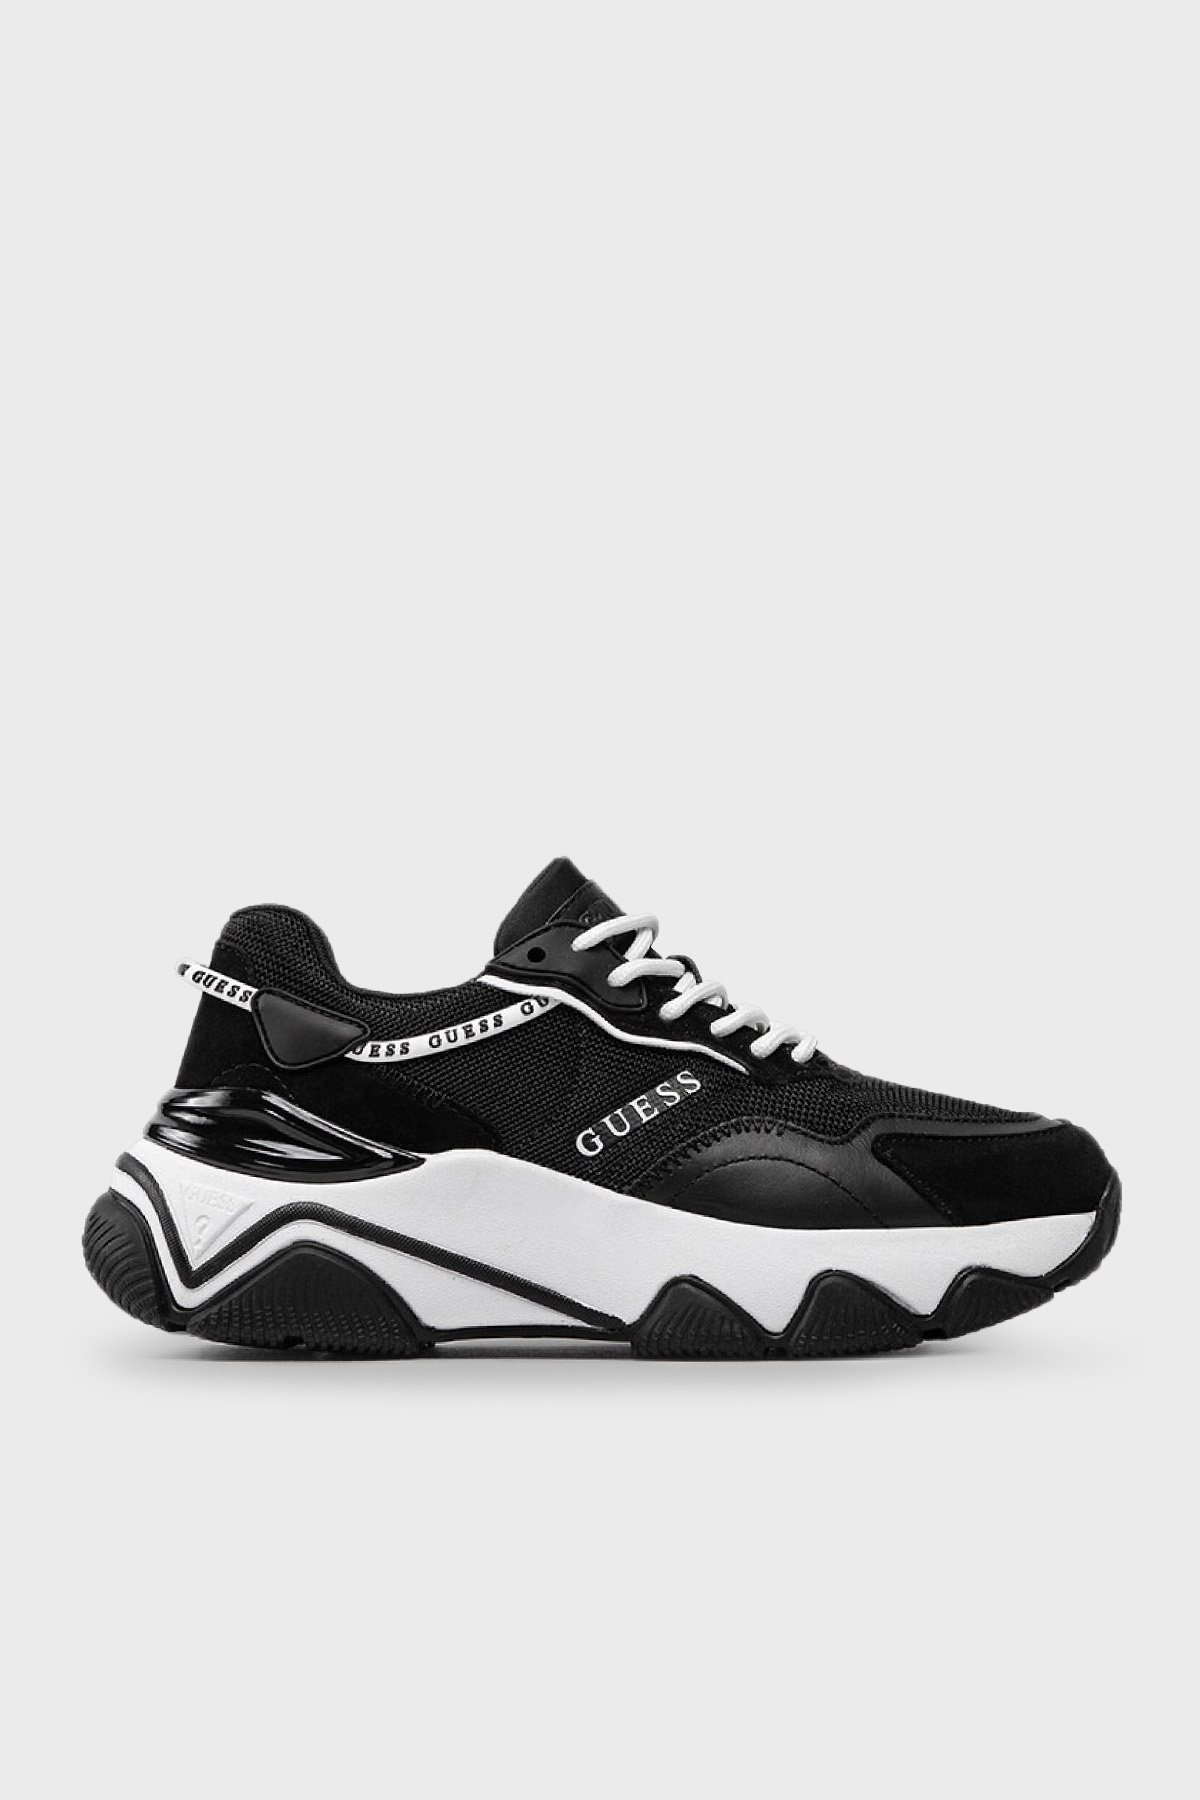 Guess Micola Logolu Kalın Tabanlı Sneaker Bayan Ayakkabı FL7MIC LEA12 BLACK SİYAH